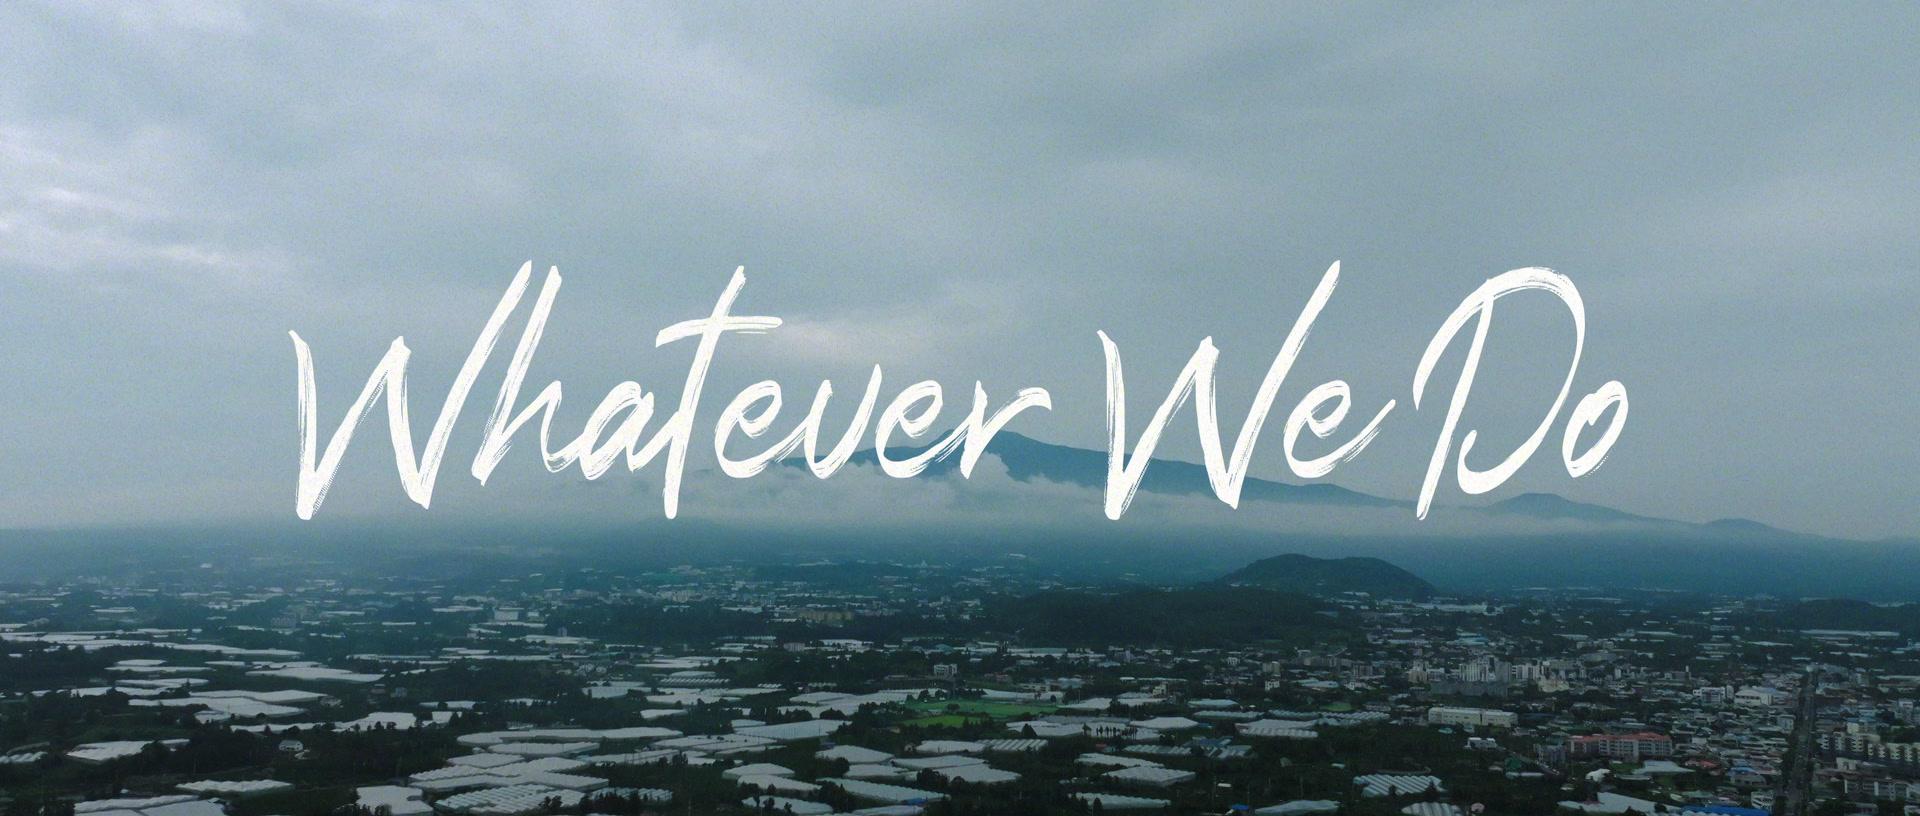 黄礼格 - Whatever we do